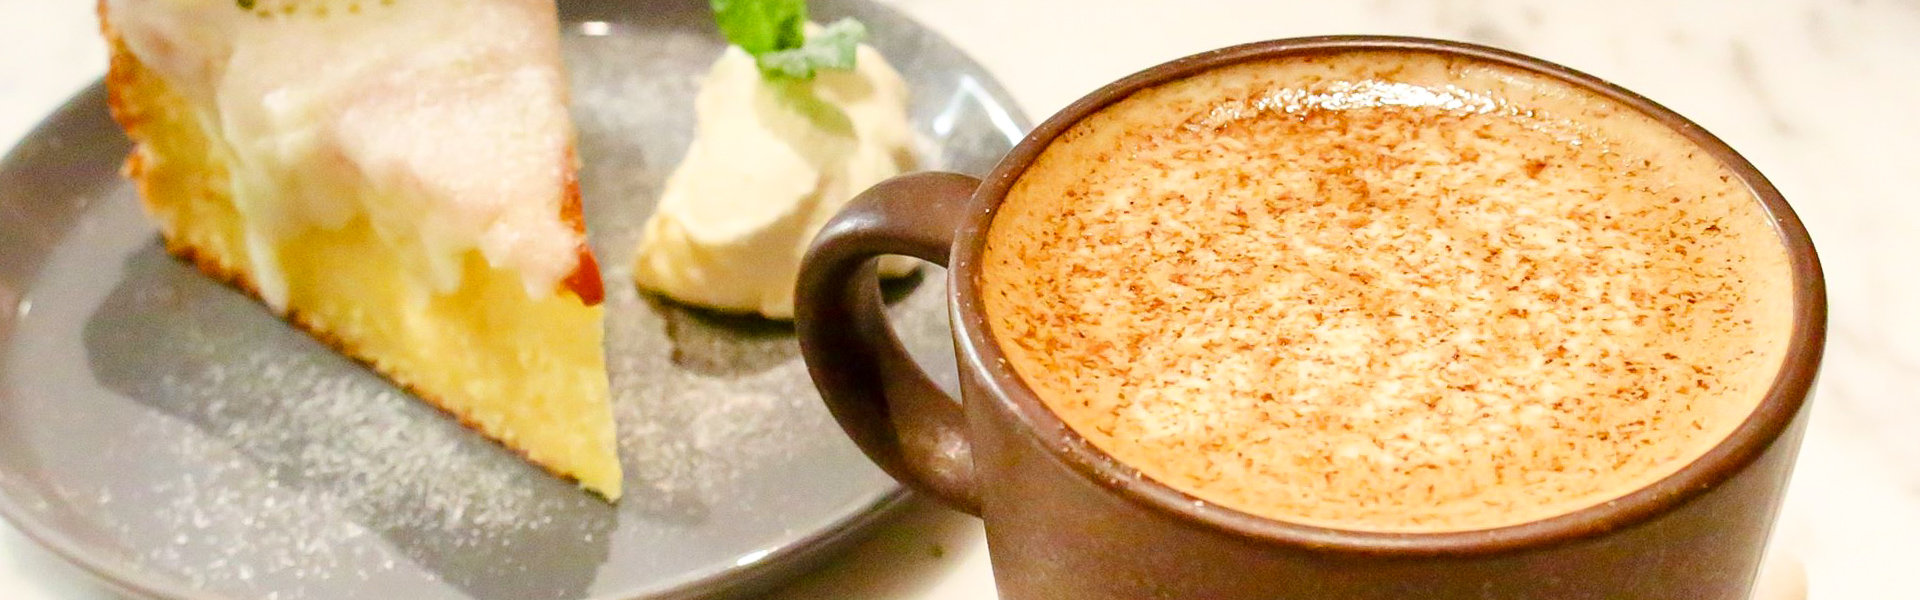 [ 六張犁站美食 ] CAFE DE RIZ米販咖啡～忙碌中暫歇，替生活取暖的小空間